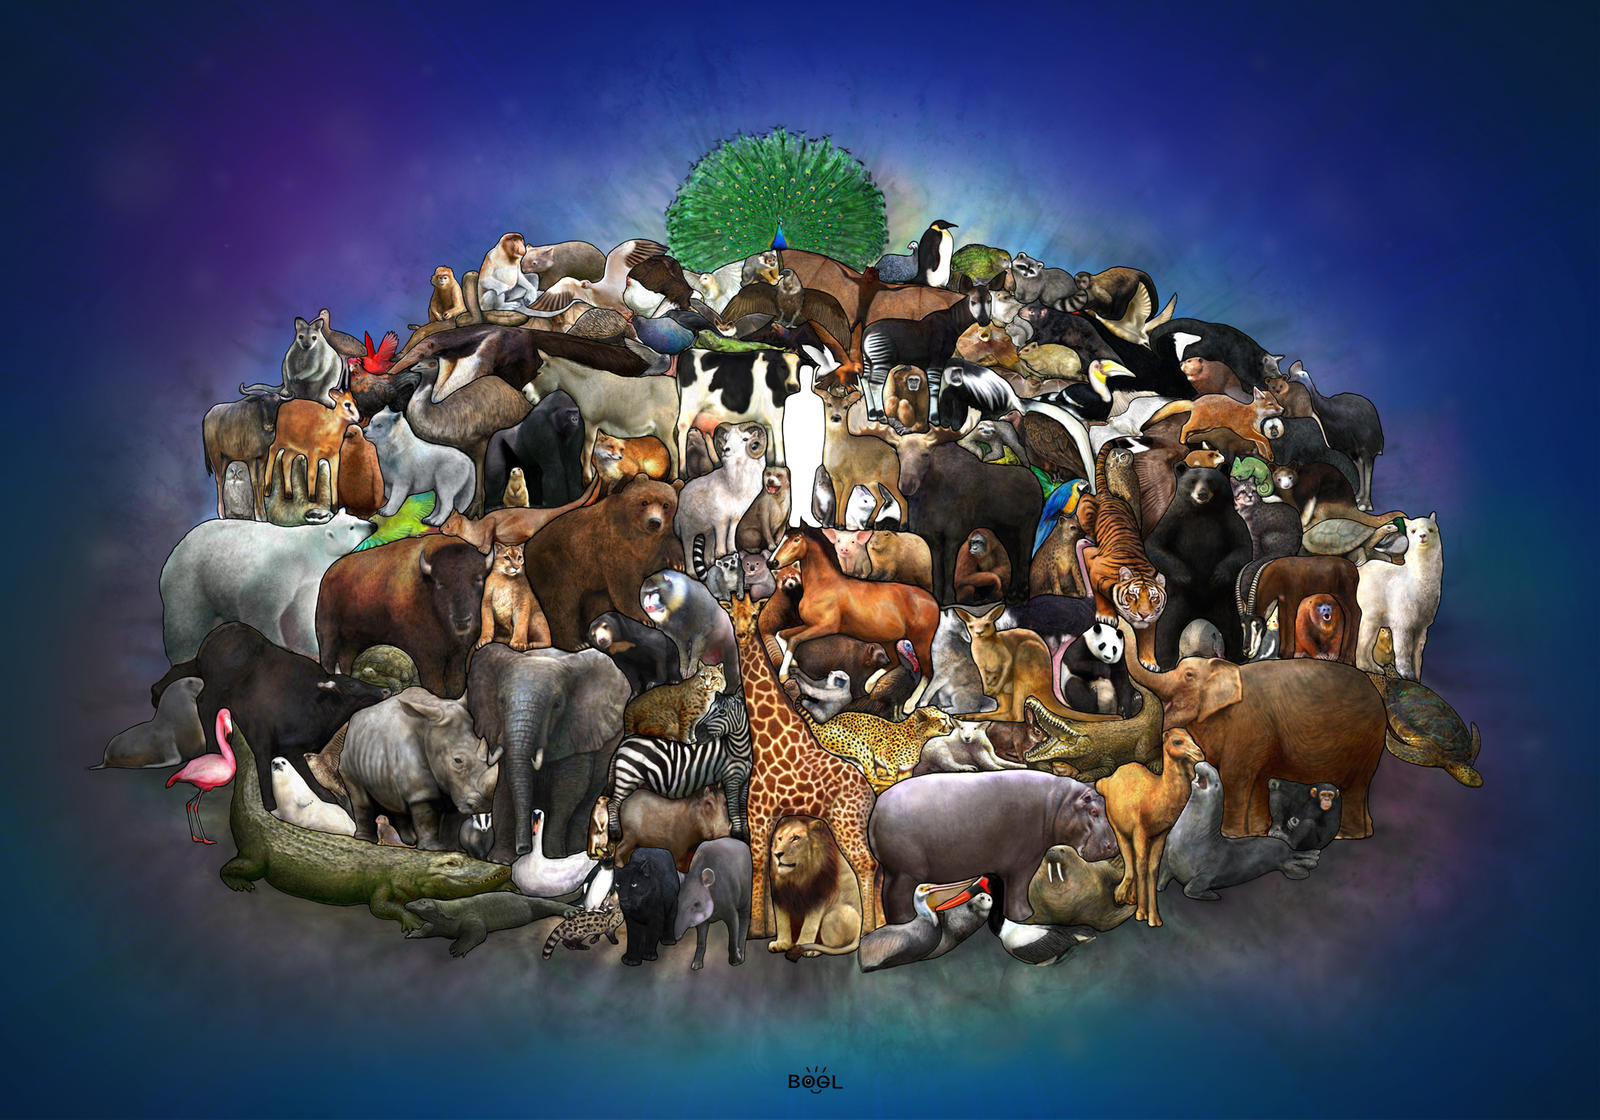 interlocking_animals_by_bobbybobby85-d5ejwx8.jpg